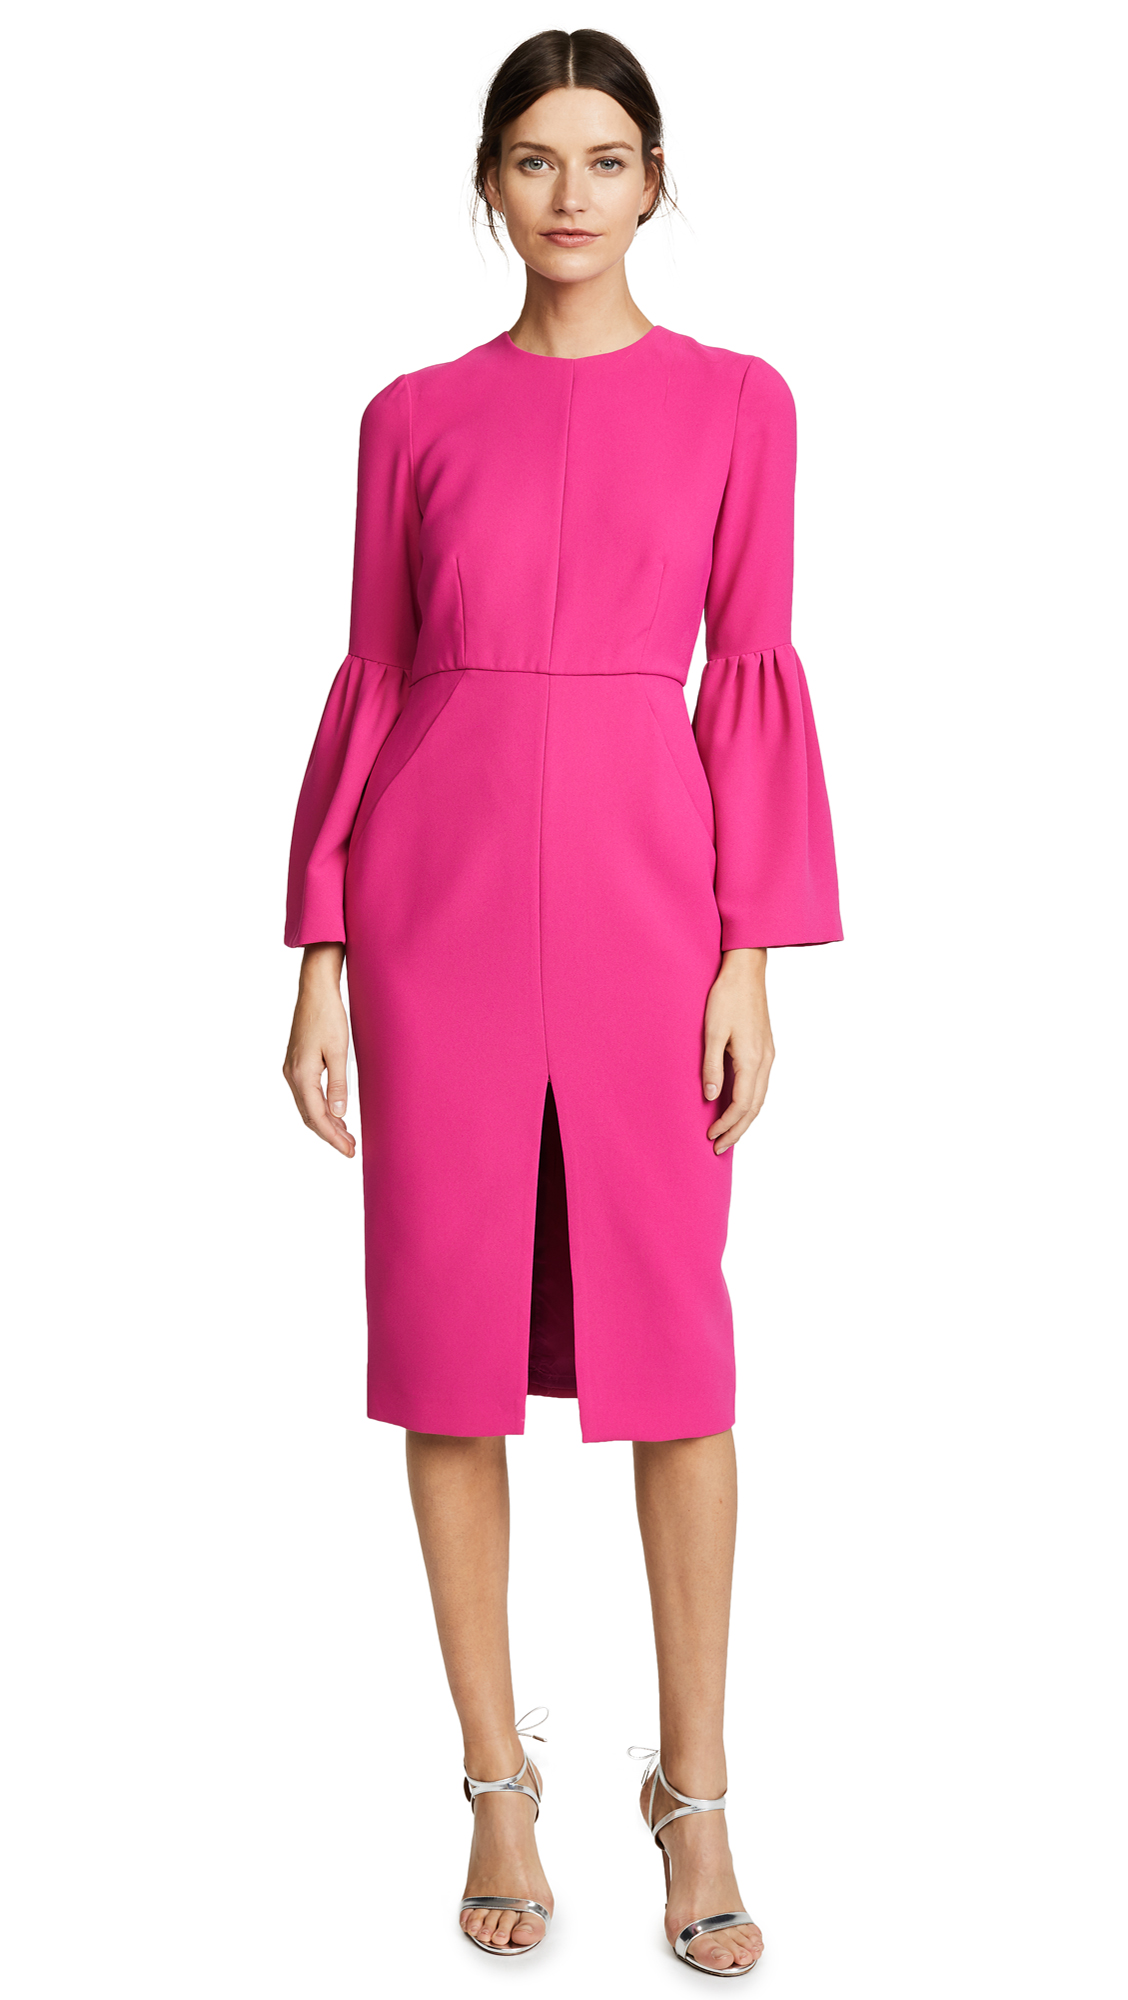 Jill Jill Stuart Bell Sleeved Dress - Begonia Pink